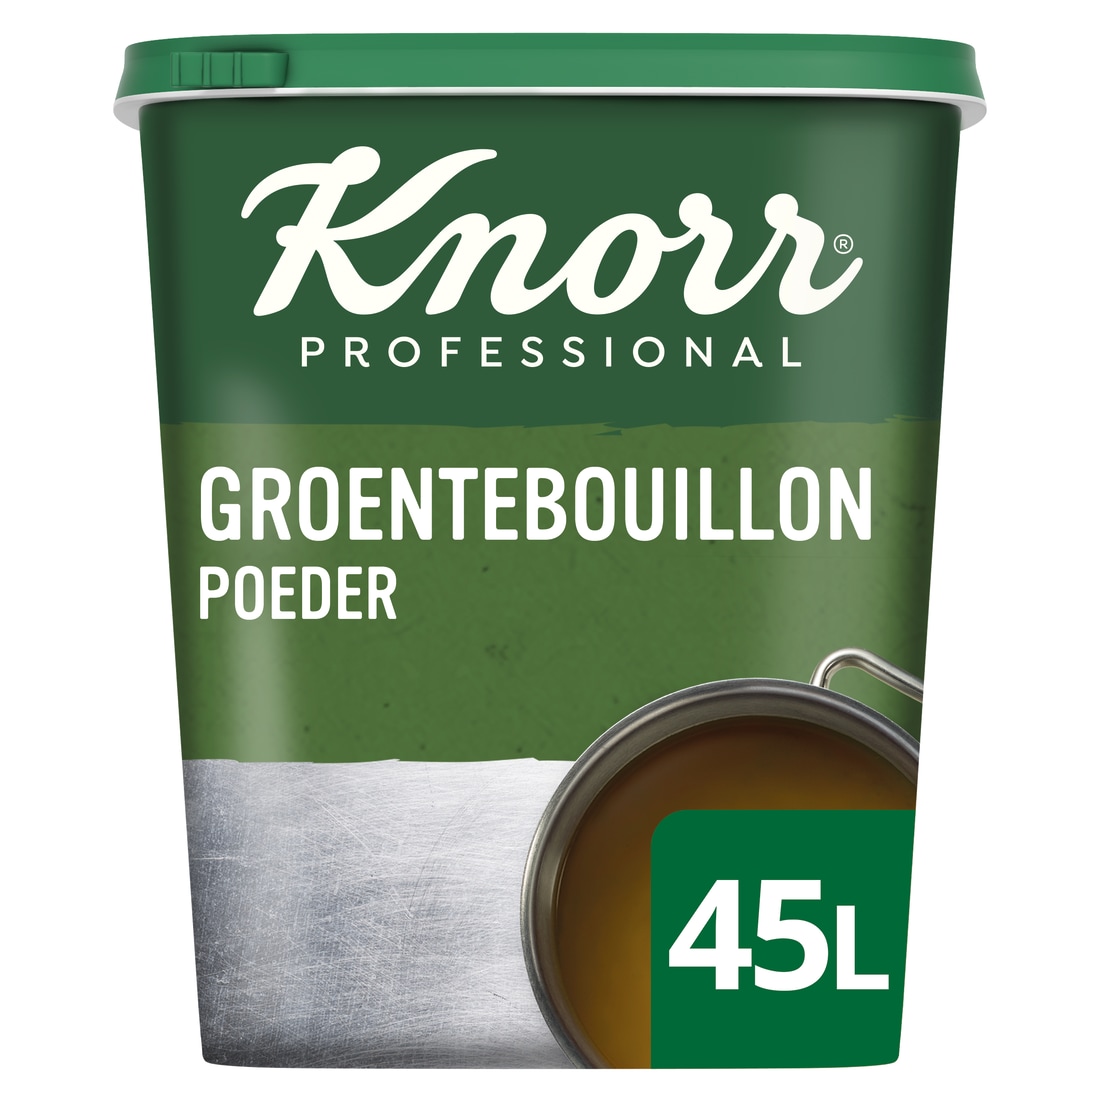 Knorr Groentebouillon Authentiek Poeder opbrengst 45L - 